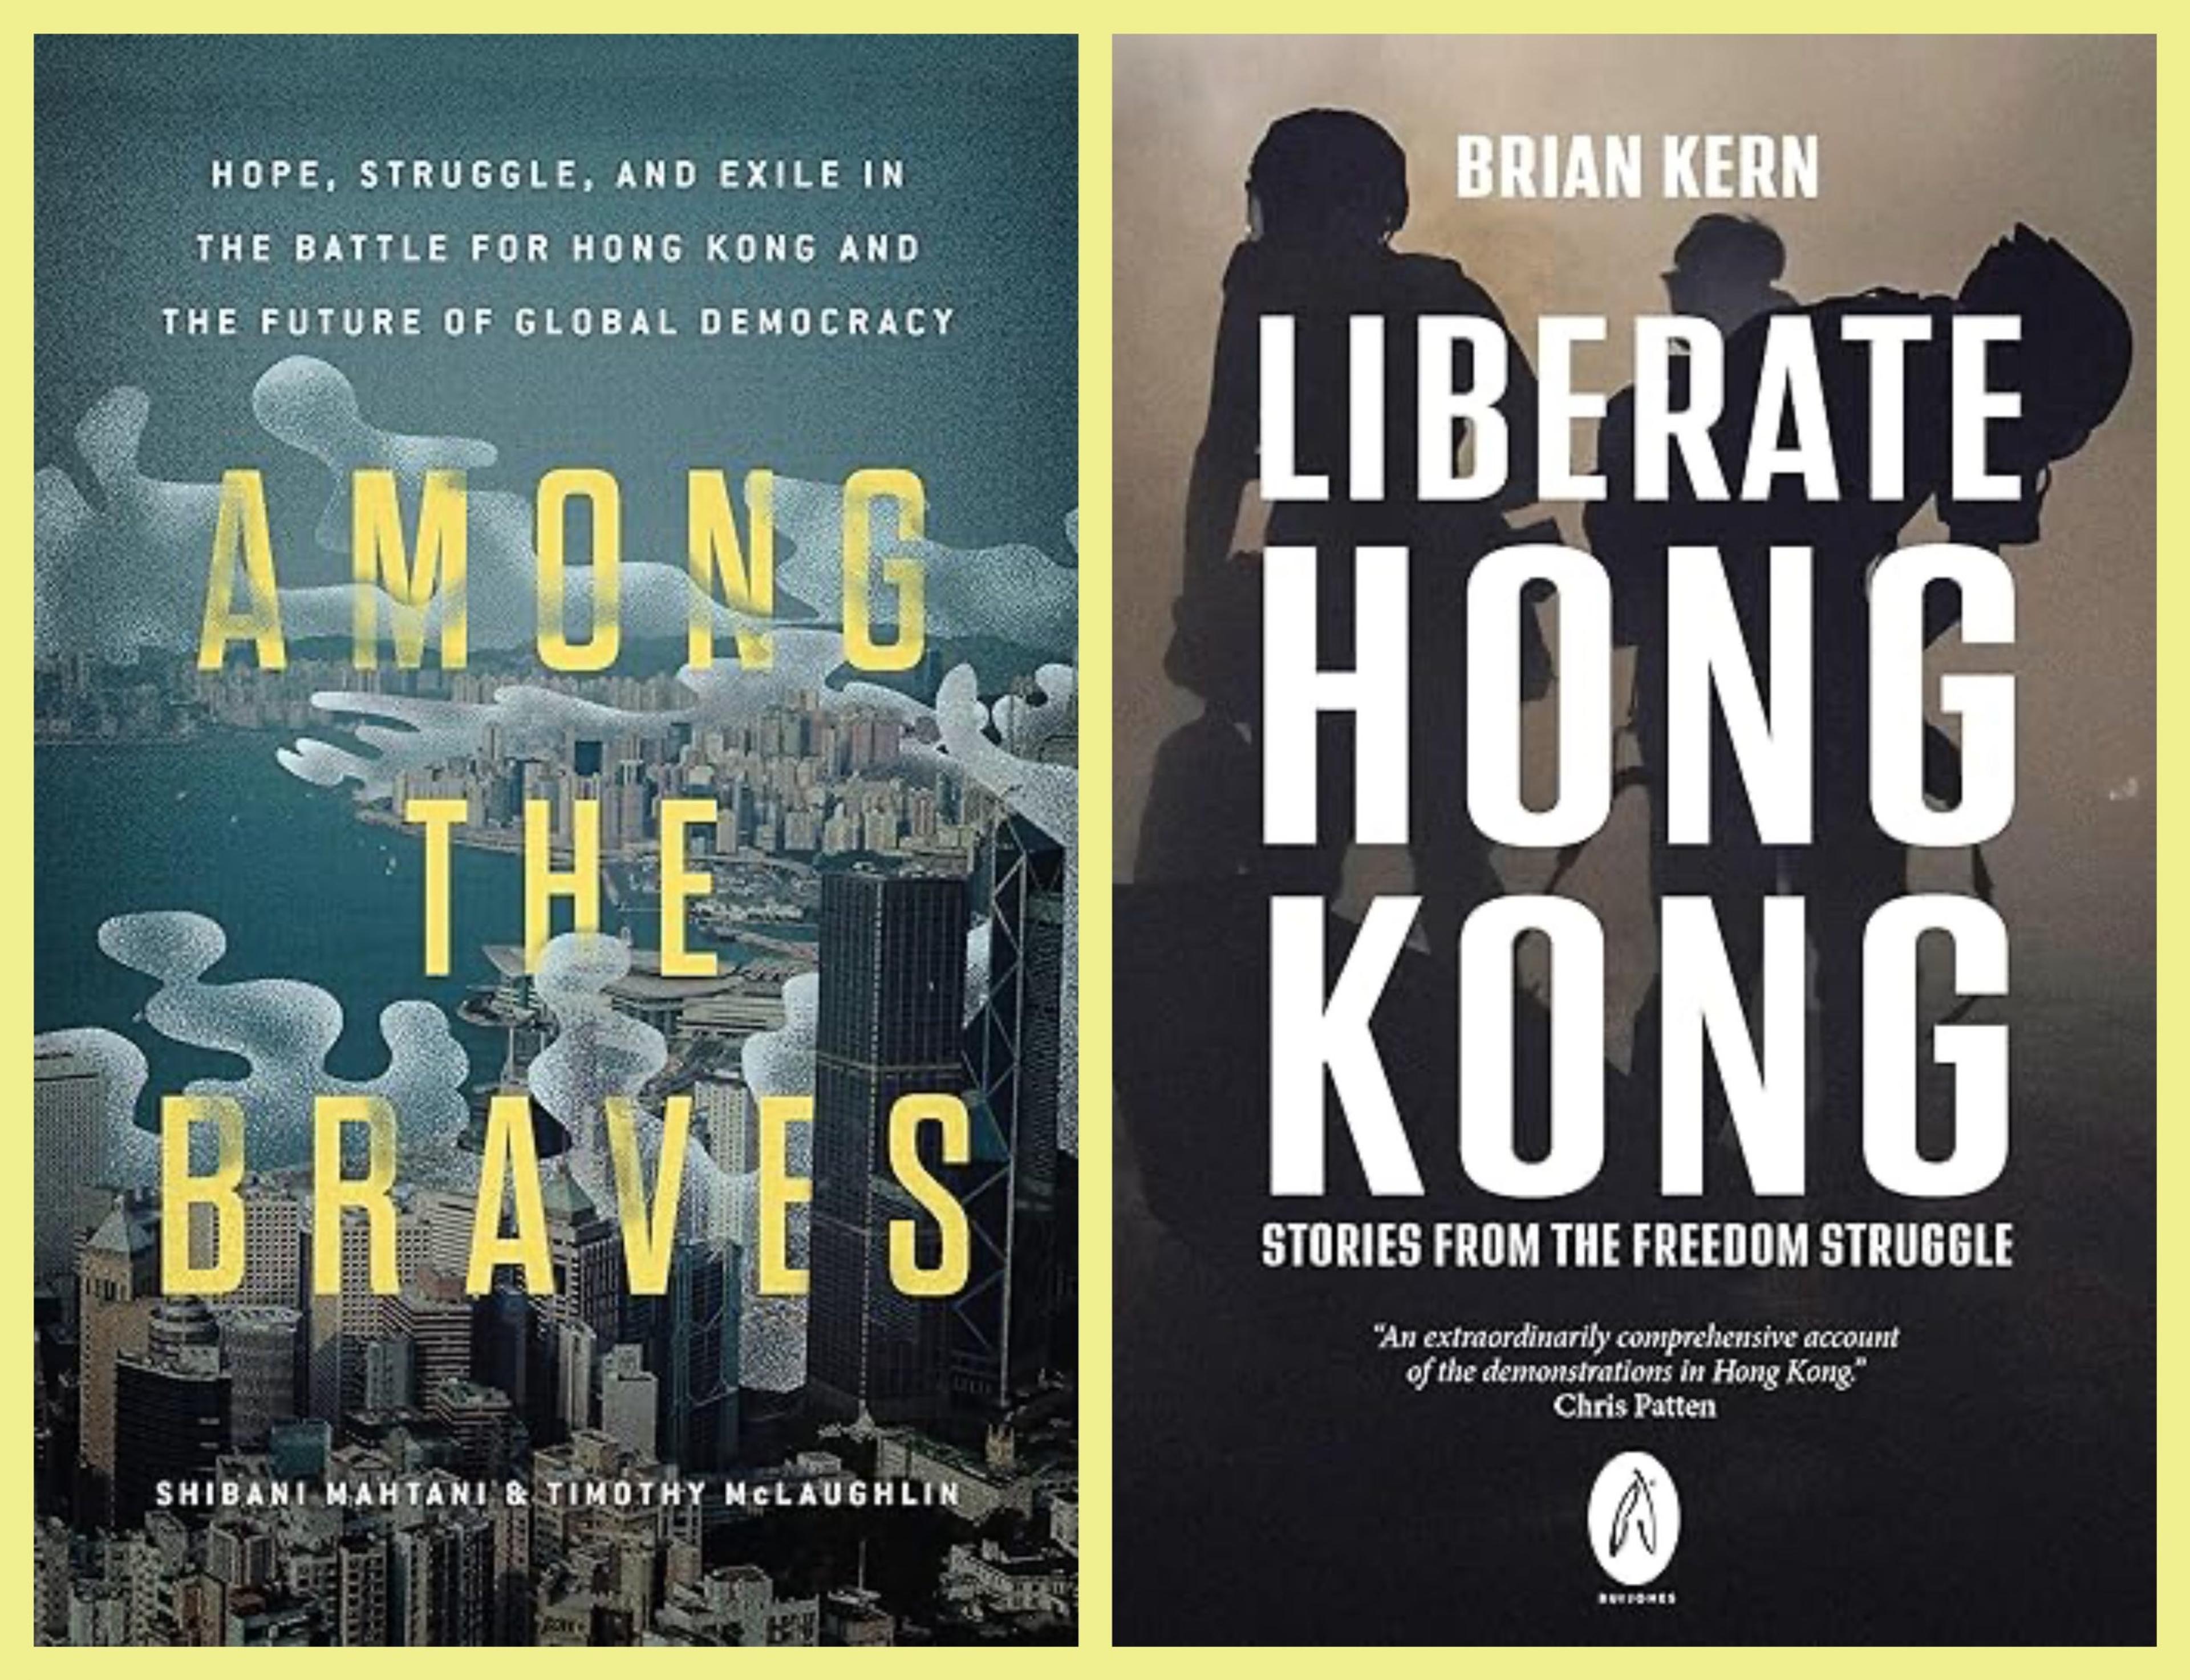 A Memoryless Hong Kong: On Shibani Mahtani and Timothy McLaughlin’s “Among the Braves” and Brian Kern’s “Liberate Hong Kong”